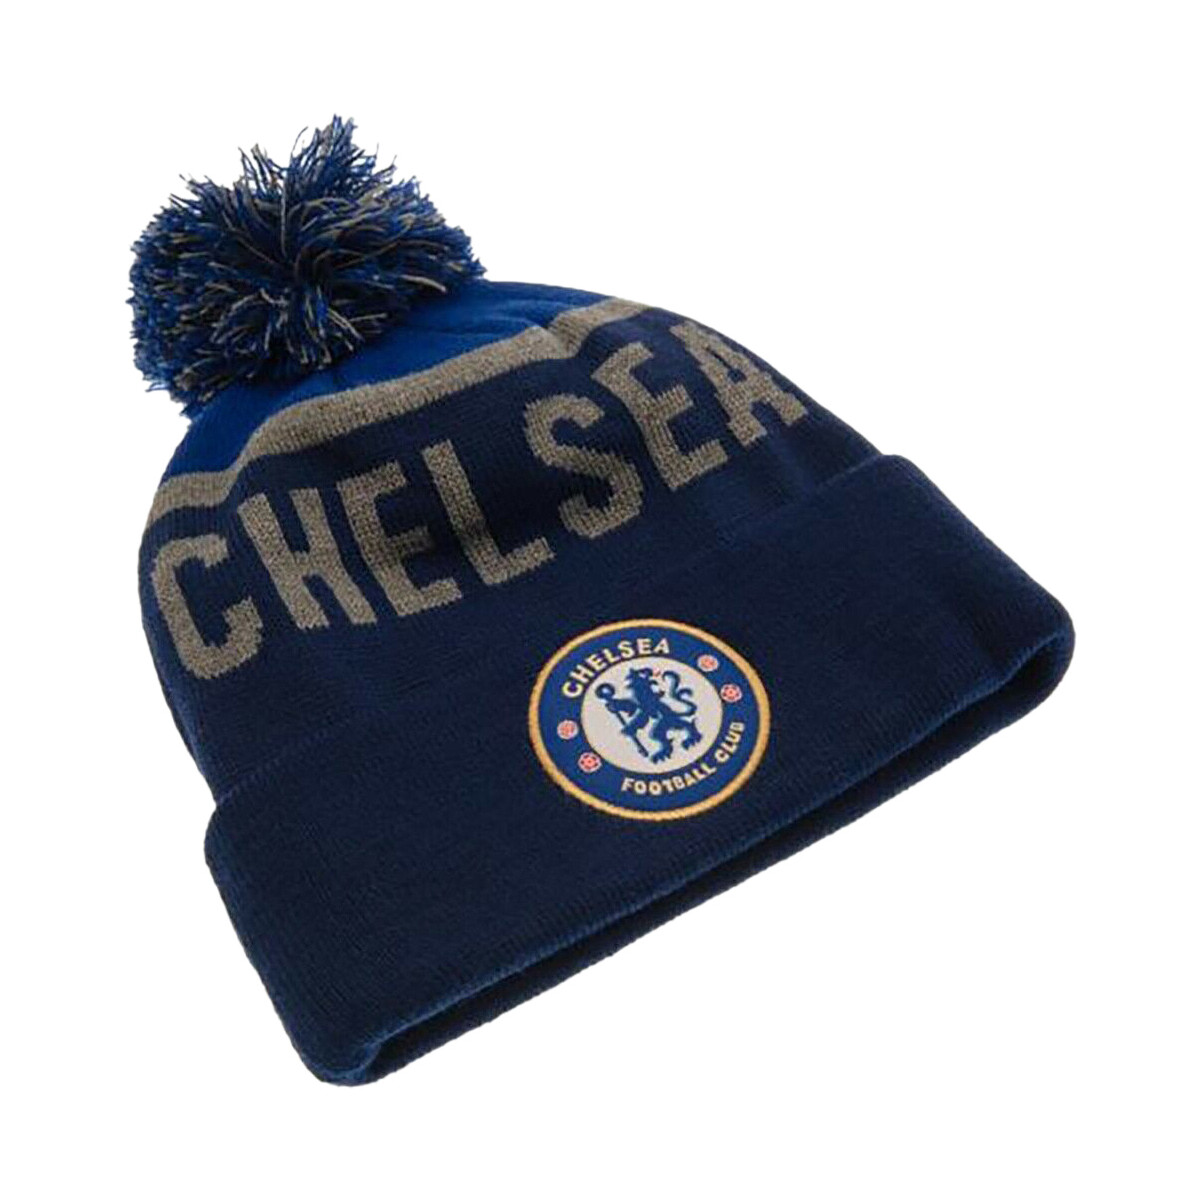 Accessori Cappelli Chelsea Fc TA2148 Blu